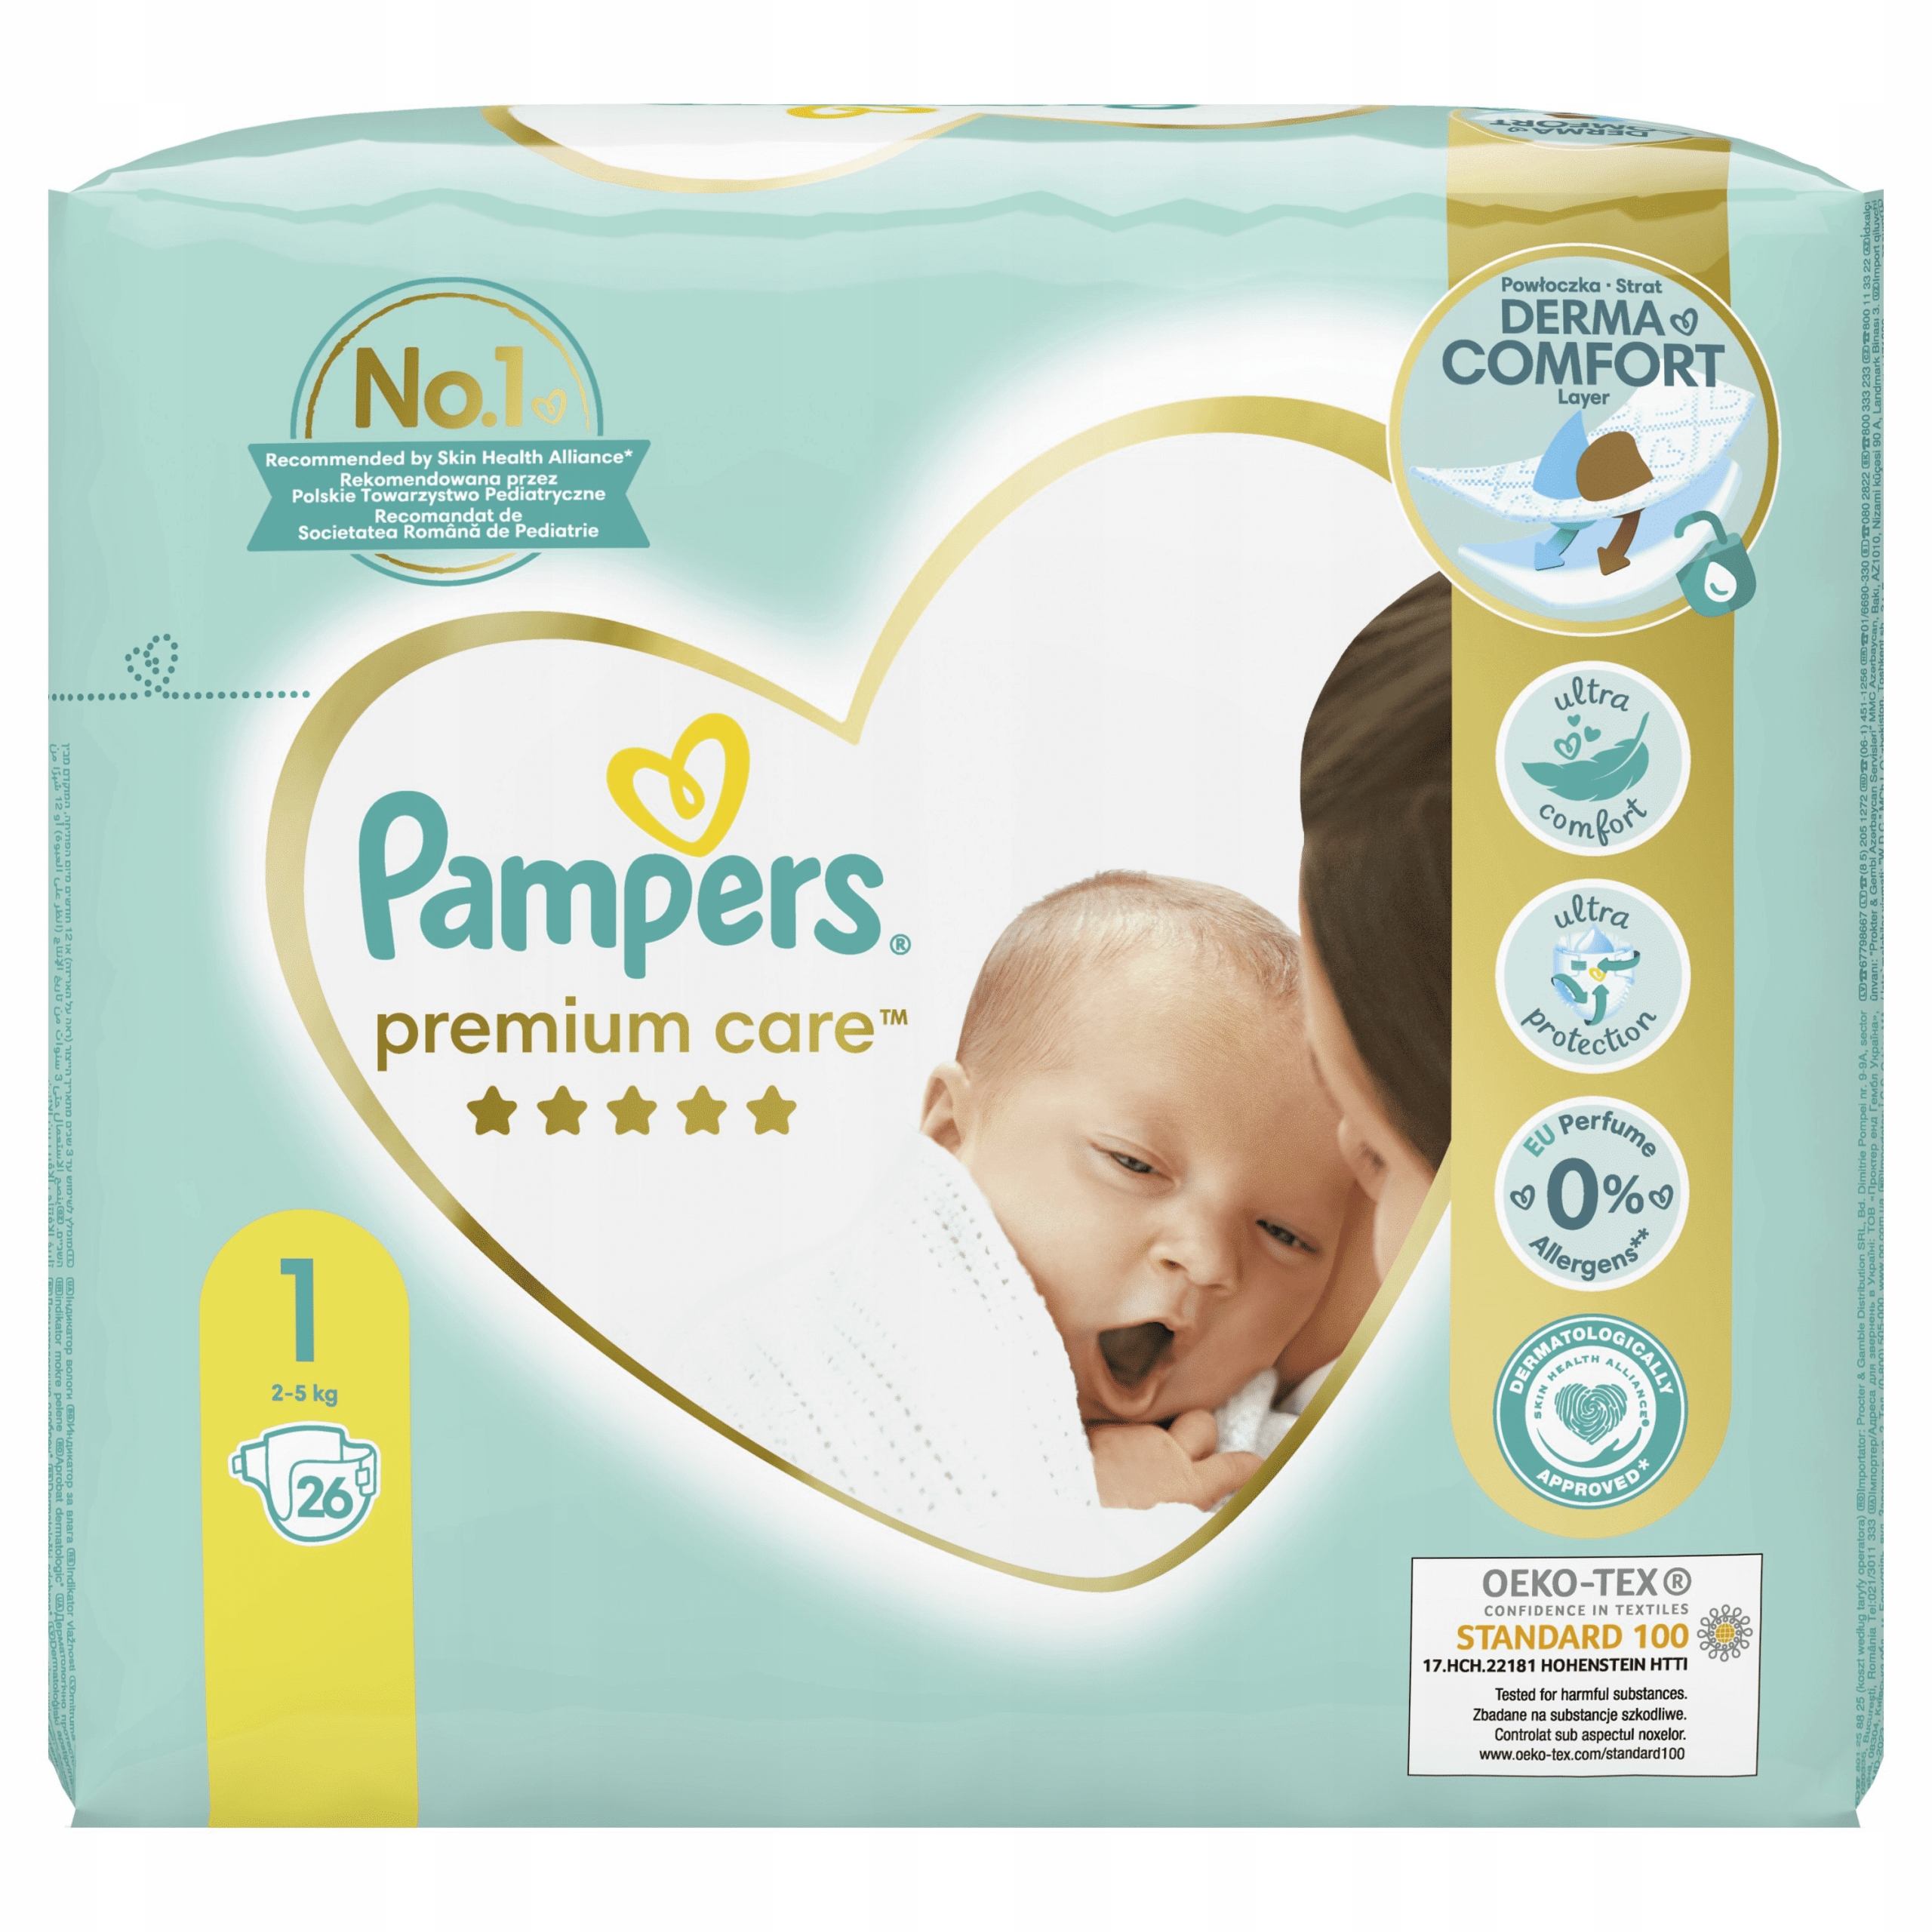 pampers newborn 2-5 78 allegro